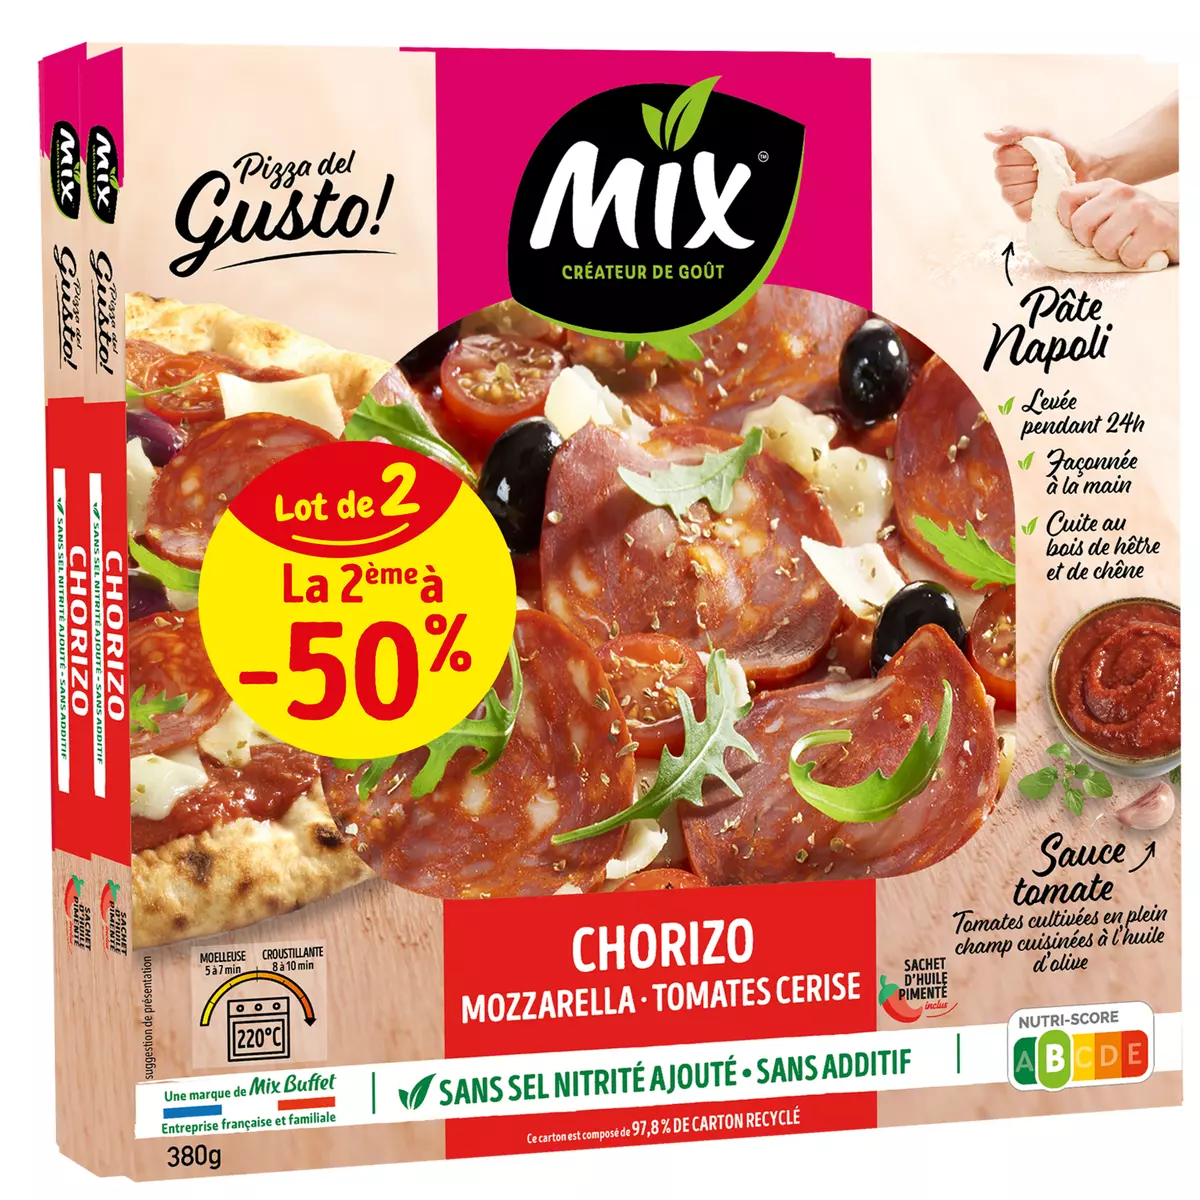 MIX BUFFET Del Gusto Pizza chorizo mozzarella et tomates cerise Lot de 2 760g